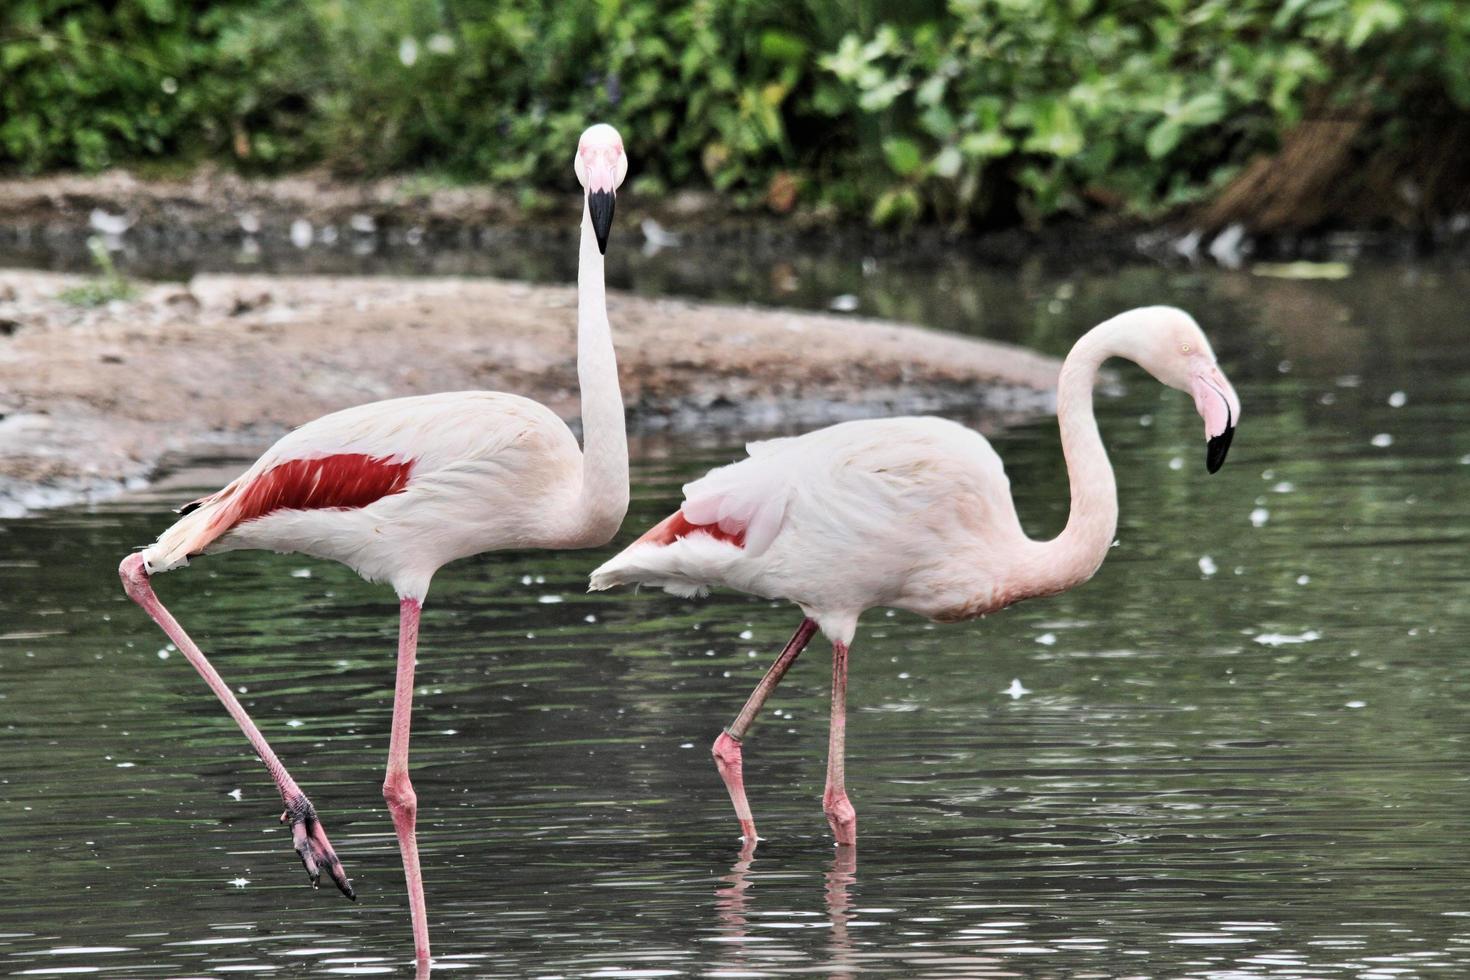 uitzicht op een flamingo foto